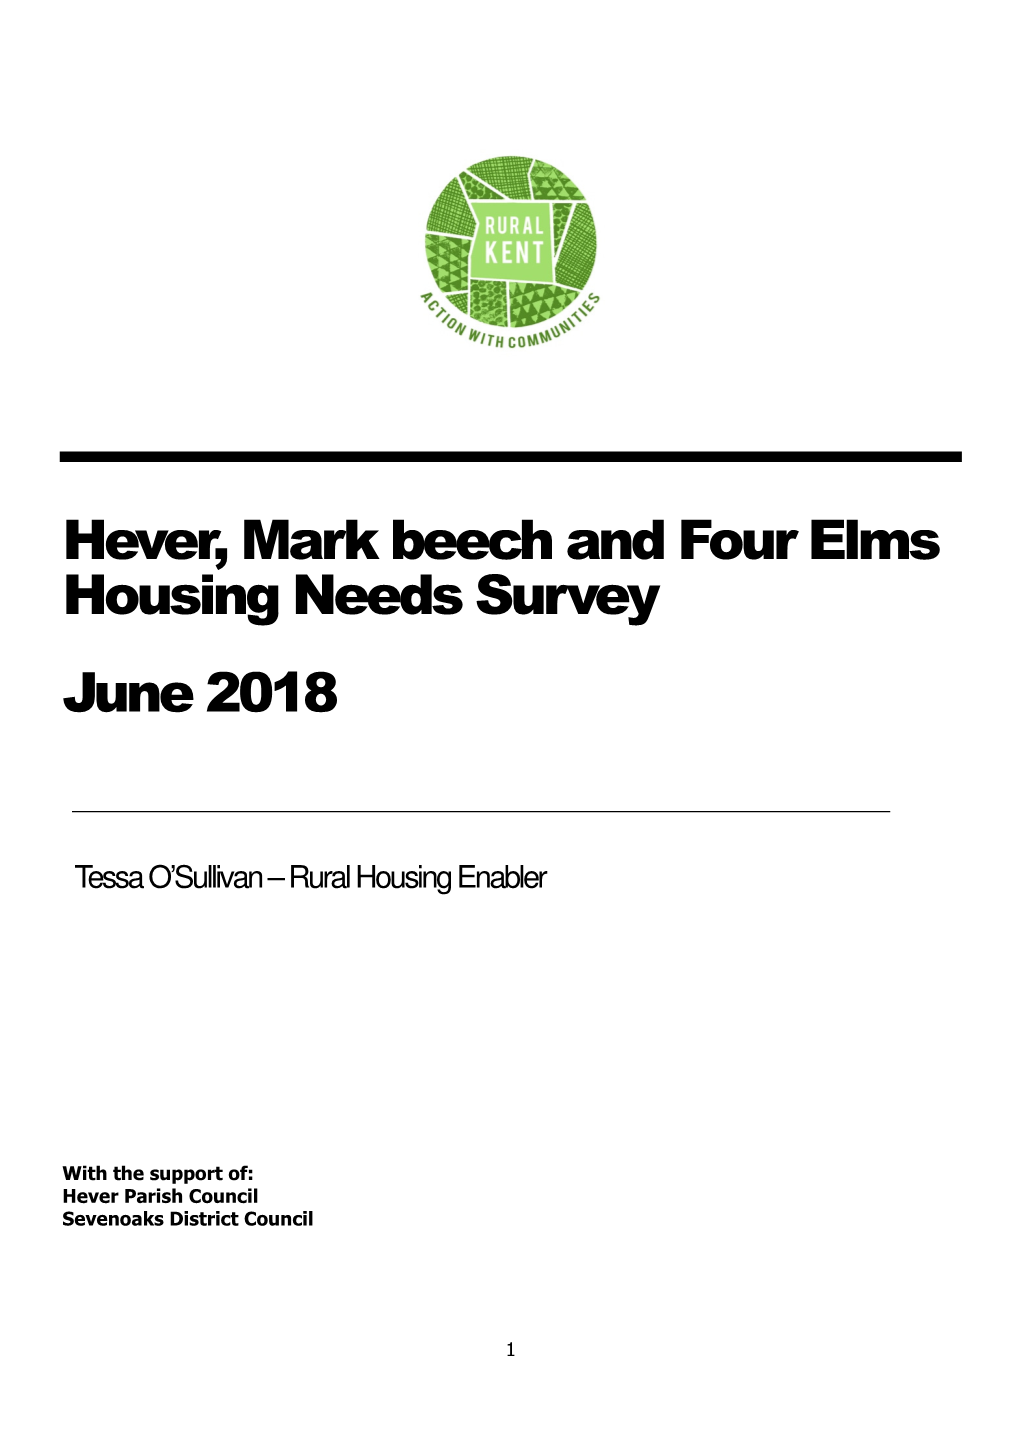 Hever, Mark Beech and Four Elms Housing Needs Survey June 2018